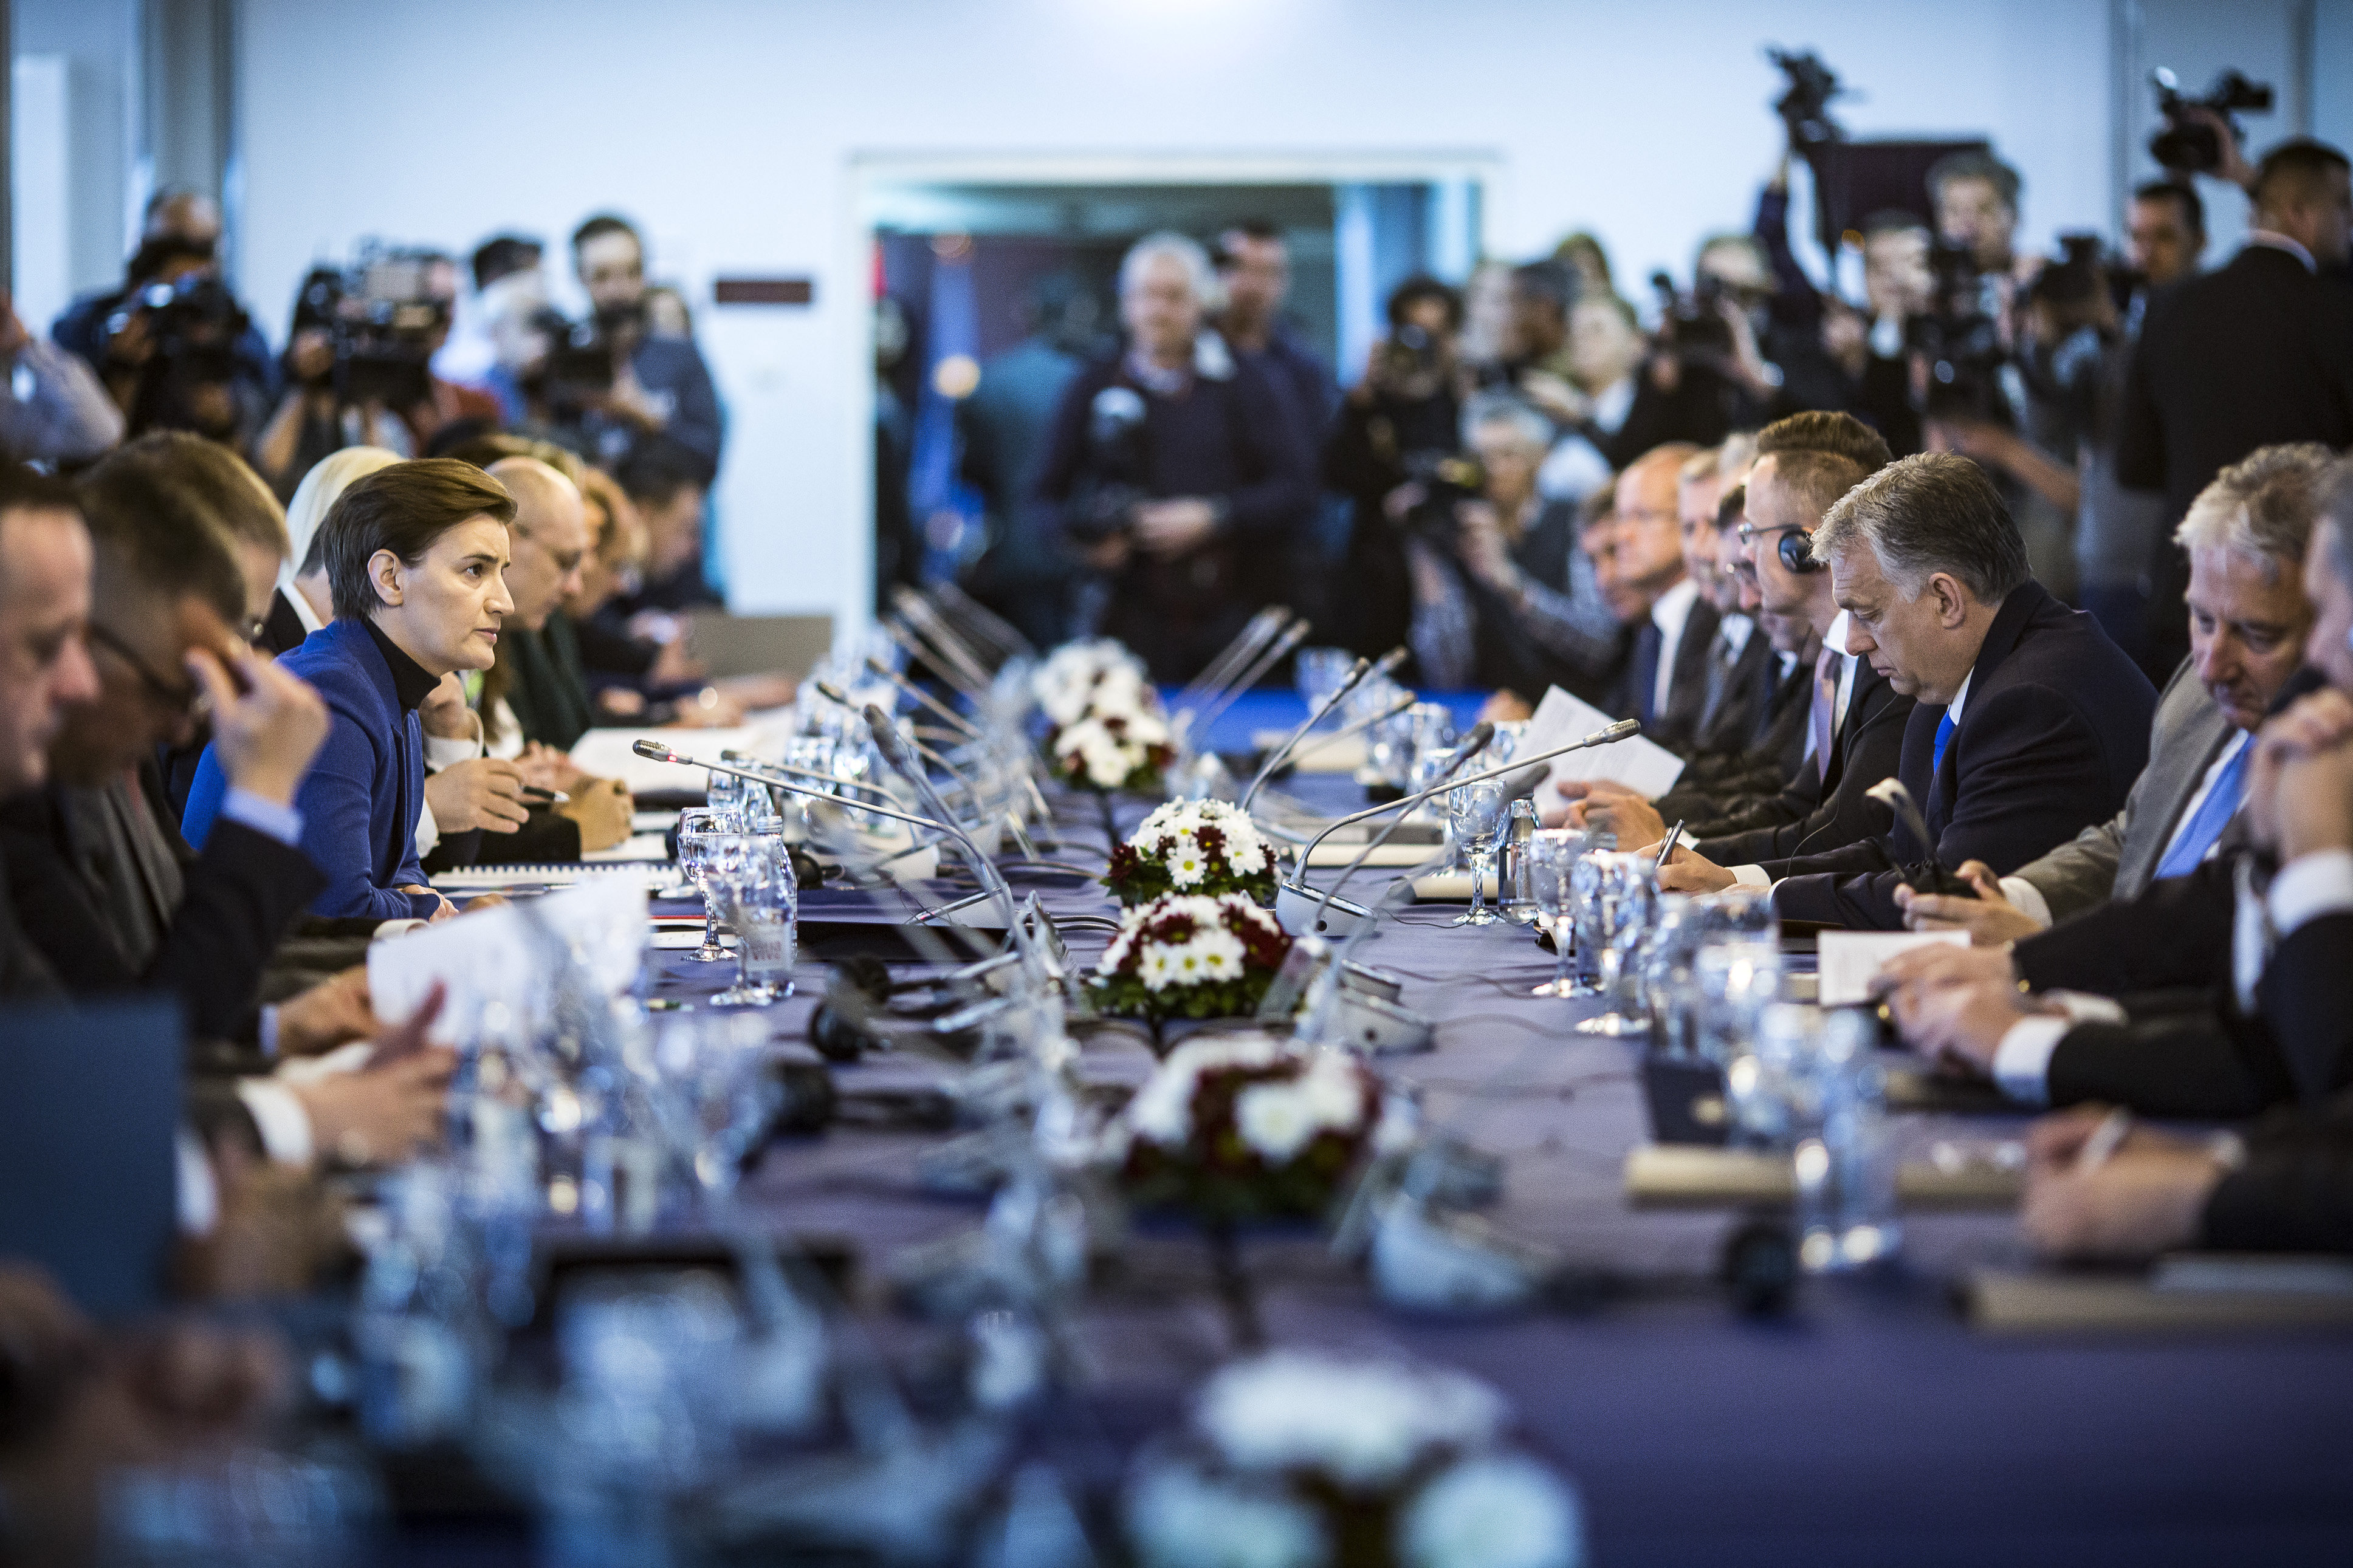 塞爾維亞和匈牙利政府聯席會議在塞爾維亞舉行